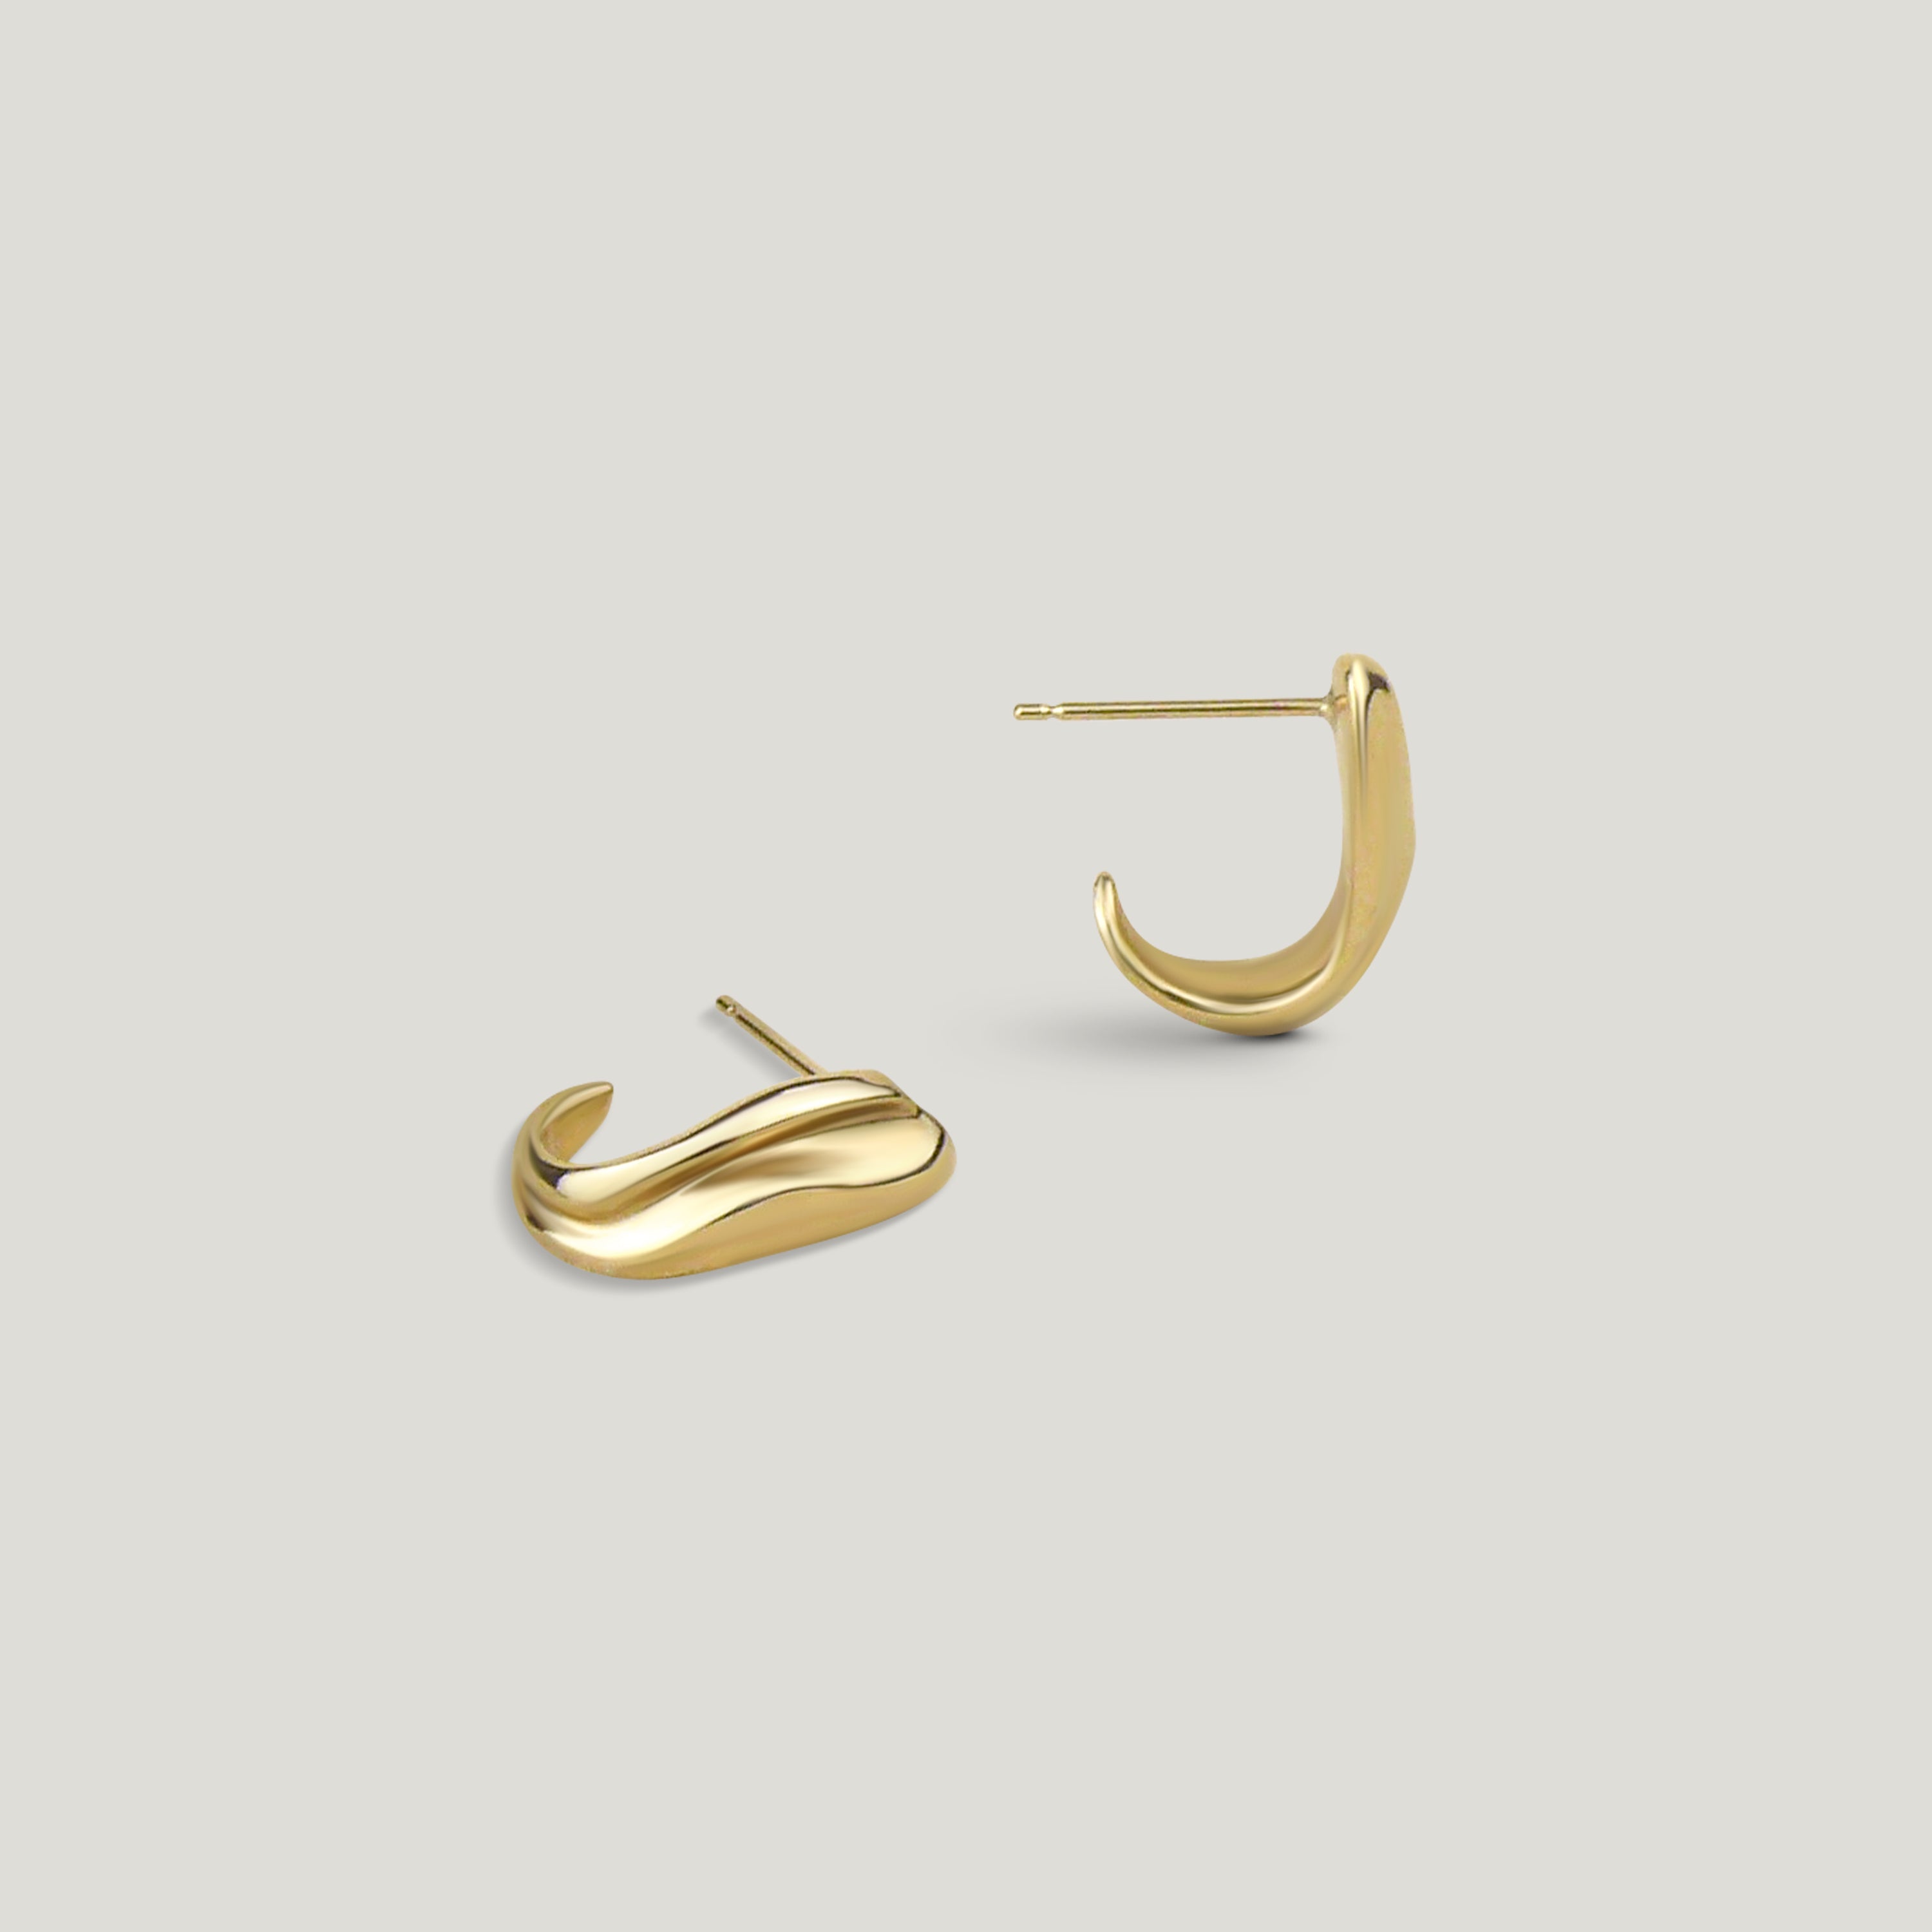 Gold Dune Huggie Hoop Earrings with organic texture